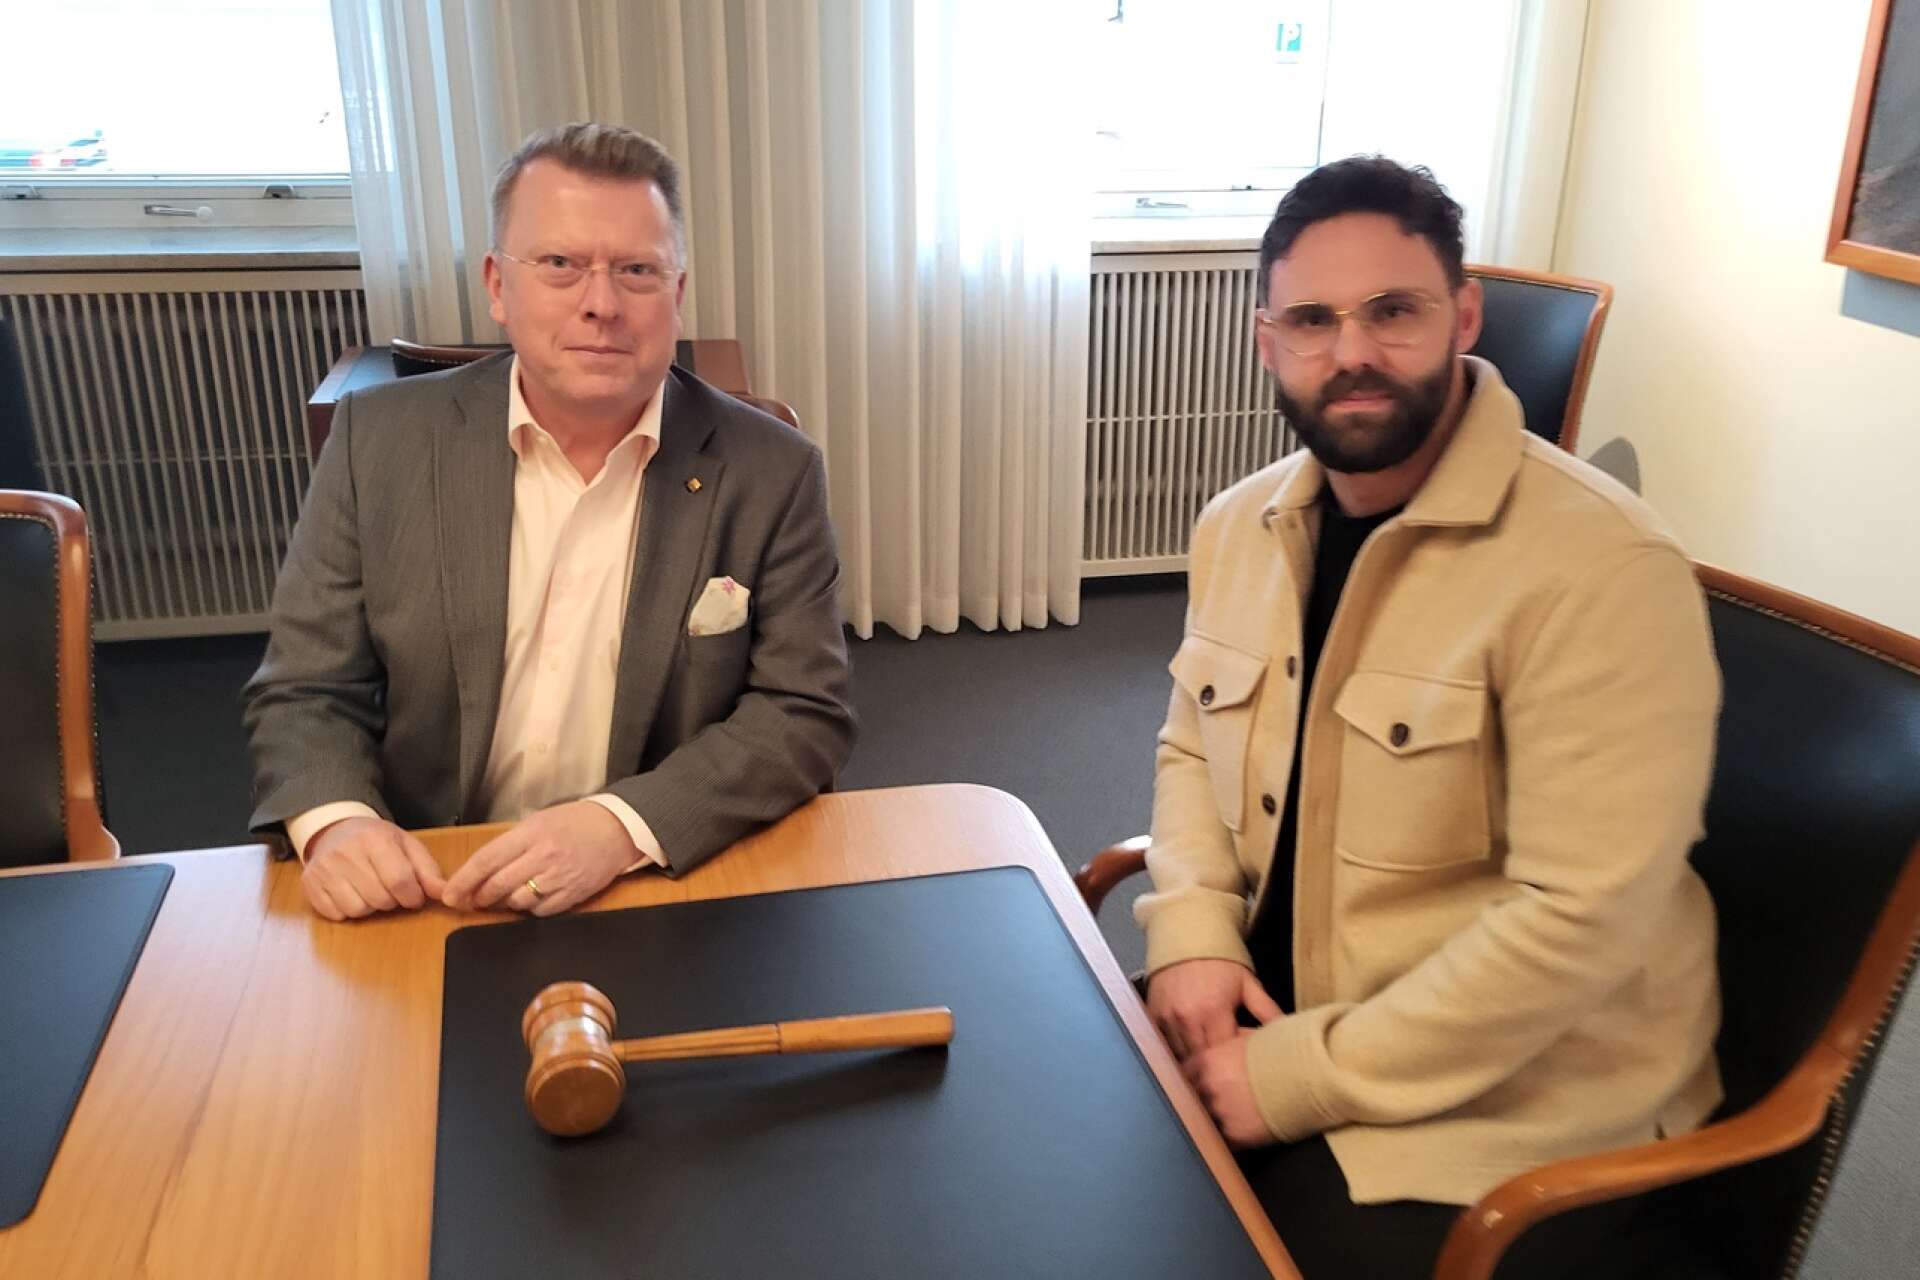 Kommundirektör Ingemar Rosén och Niklas Andersson, ungdomscoach och projektledare för ”Ungdomens kraft i Säffle” lyssnar till de unga kommunutvecklarna.